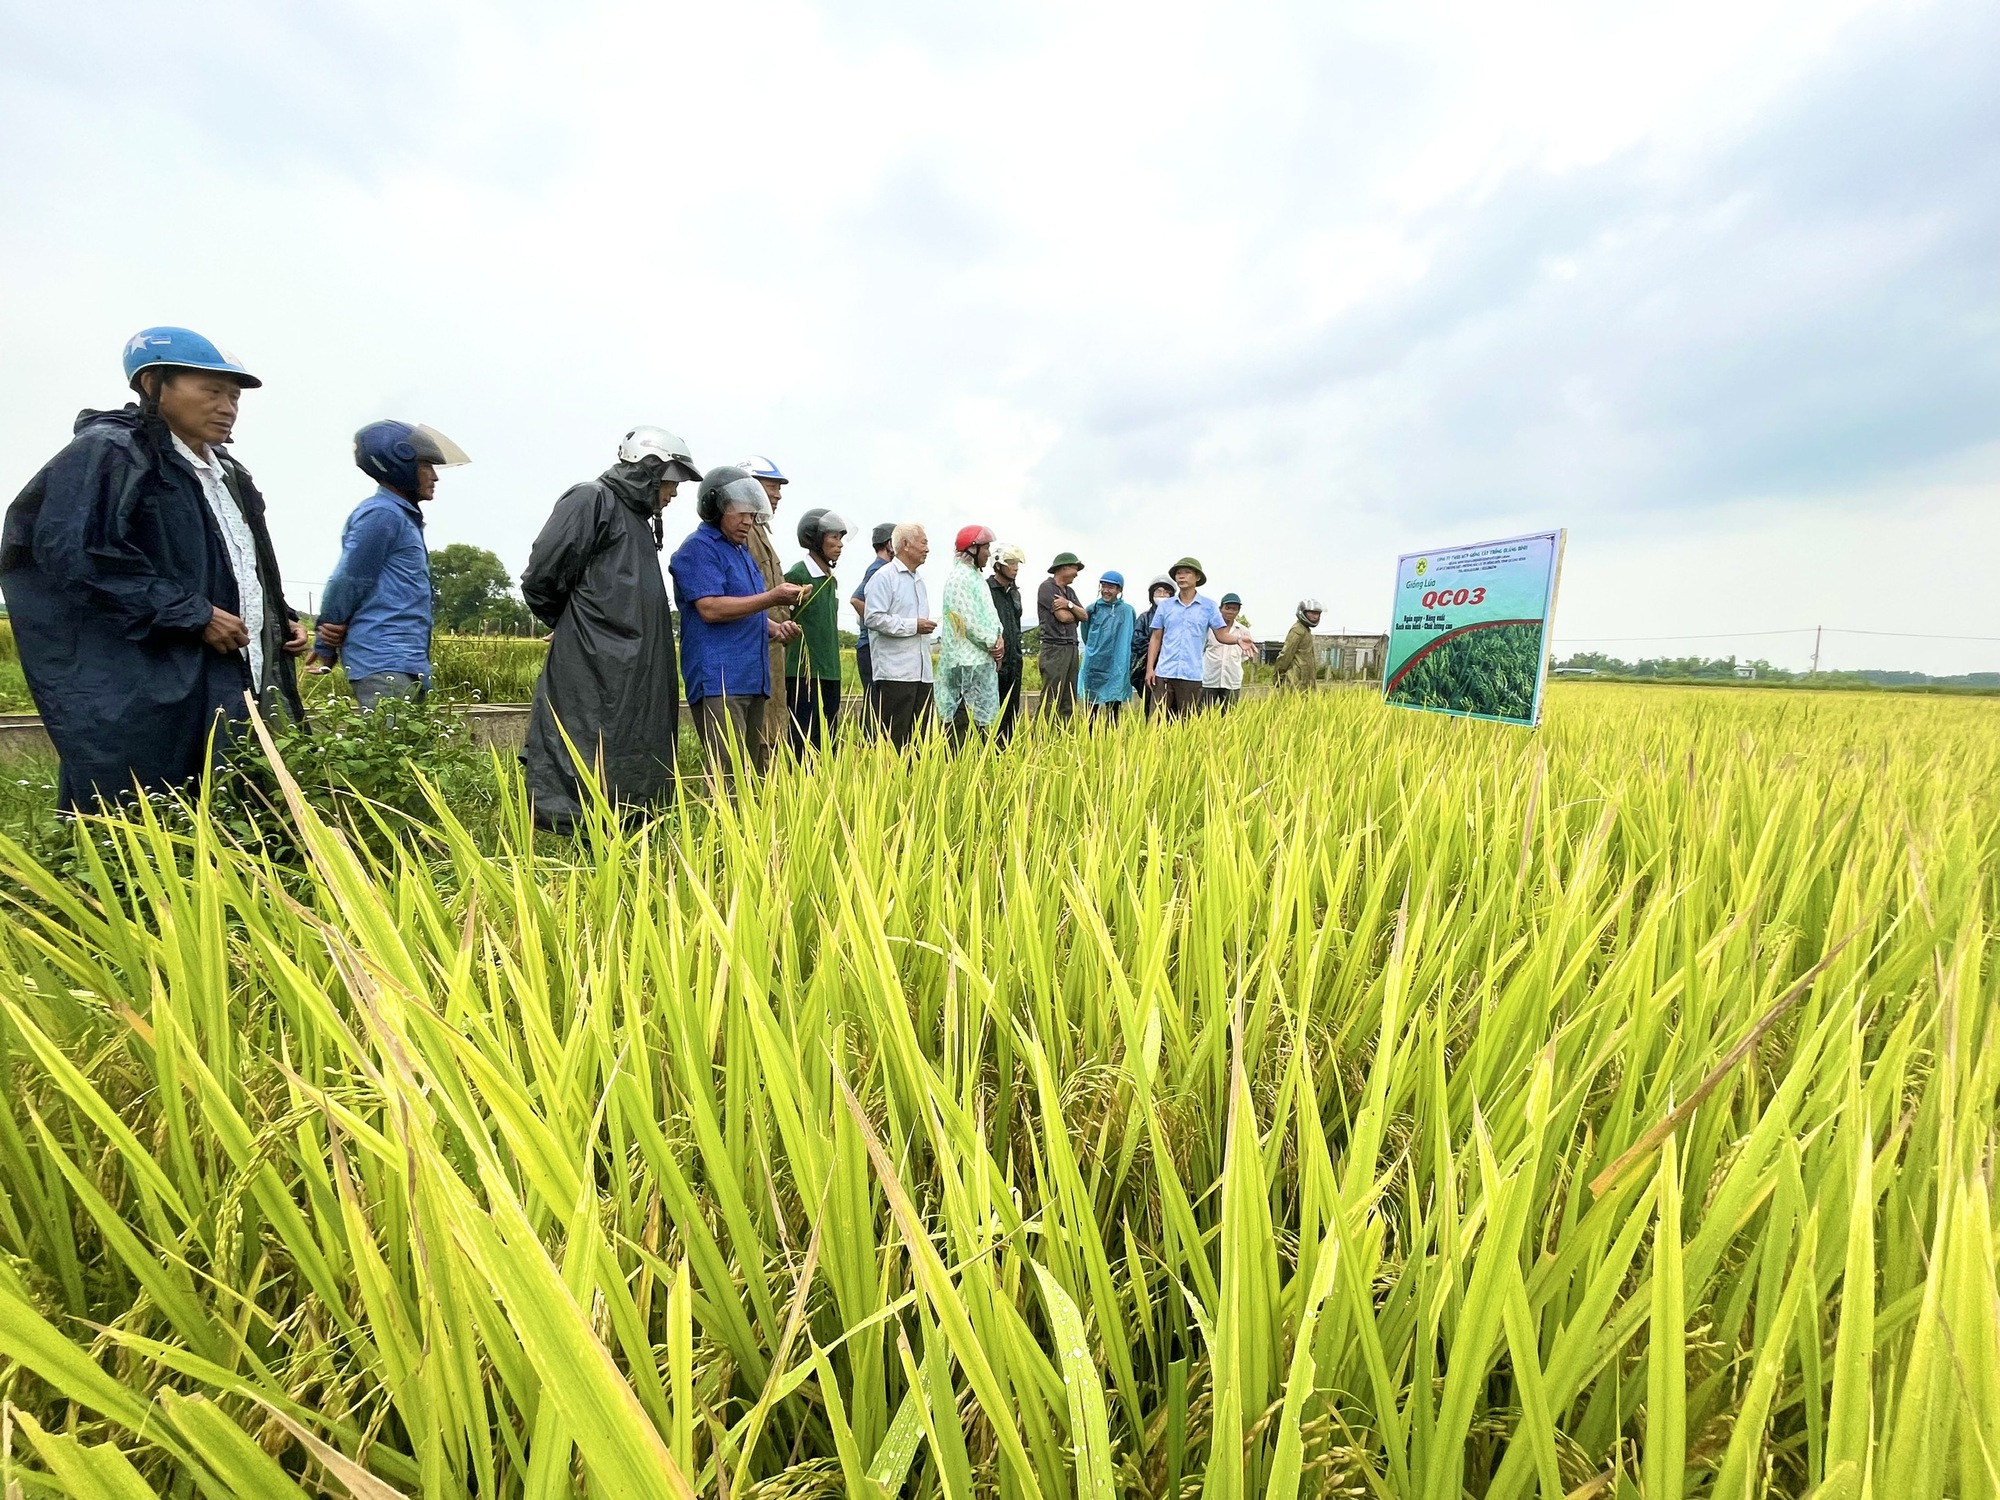 Quảng Bình: Nghỉ lễ, nông dân vẫn ra thăm đồng và đánh giá cao năng suất, chất lượng giống lúa mới này - Ảnh 1.